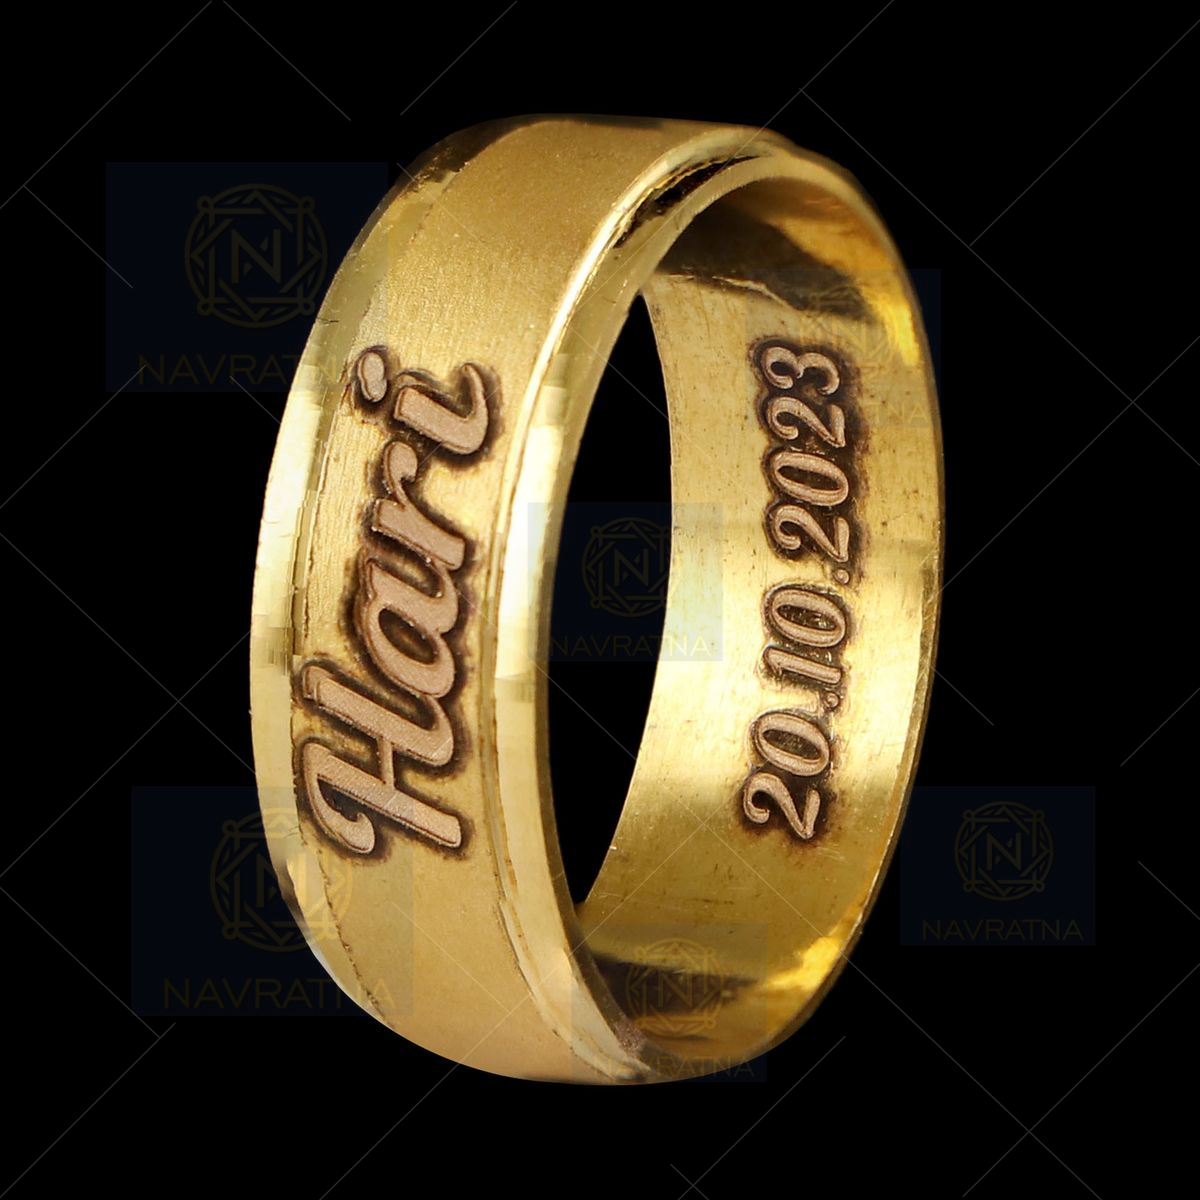 Cfustiy Personalized Custom Name Ring 18K Gold-Plated India | Ubuy